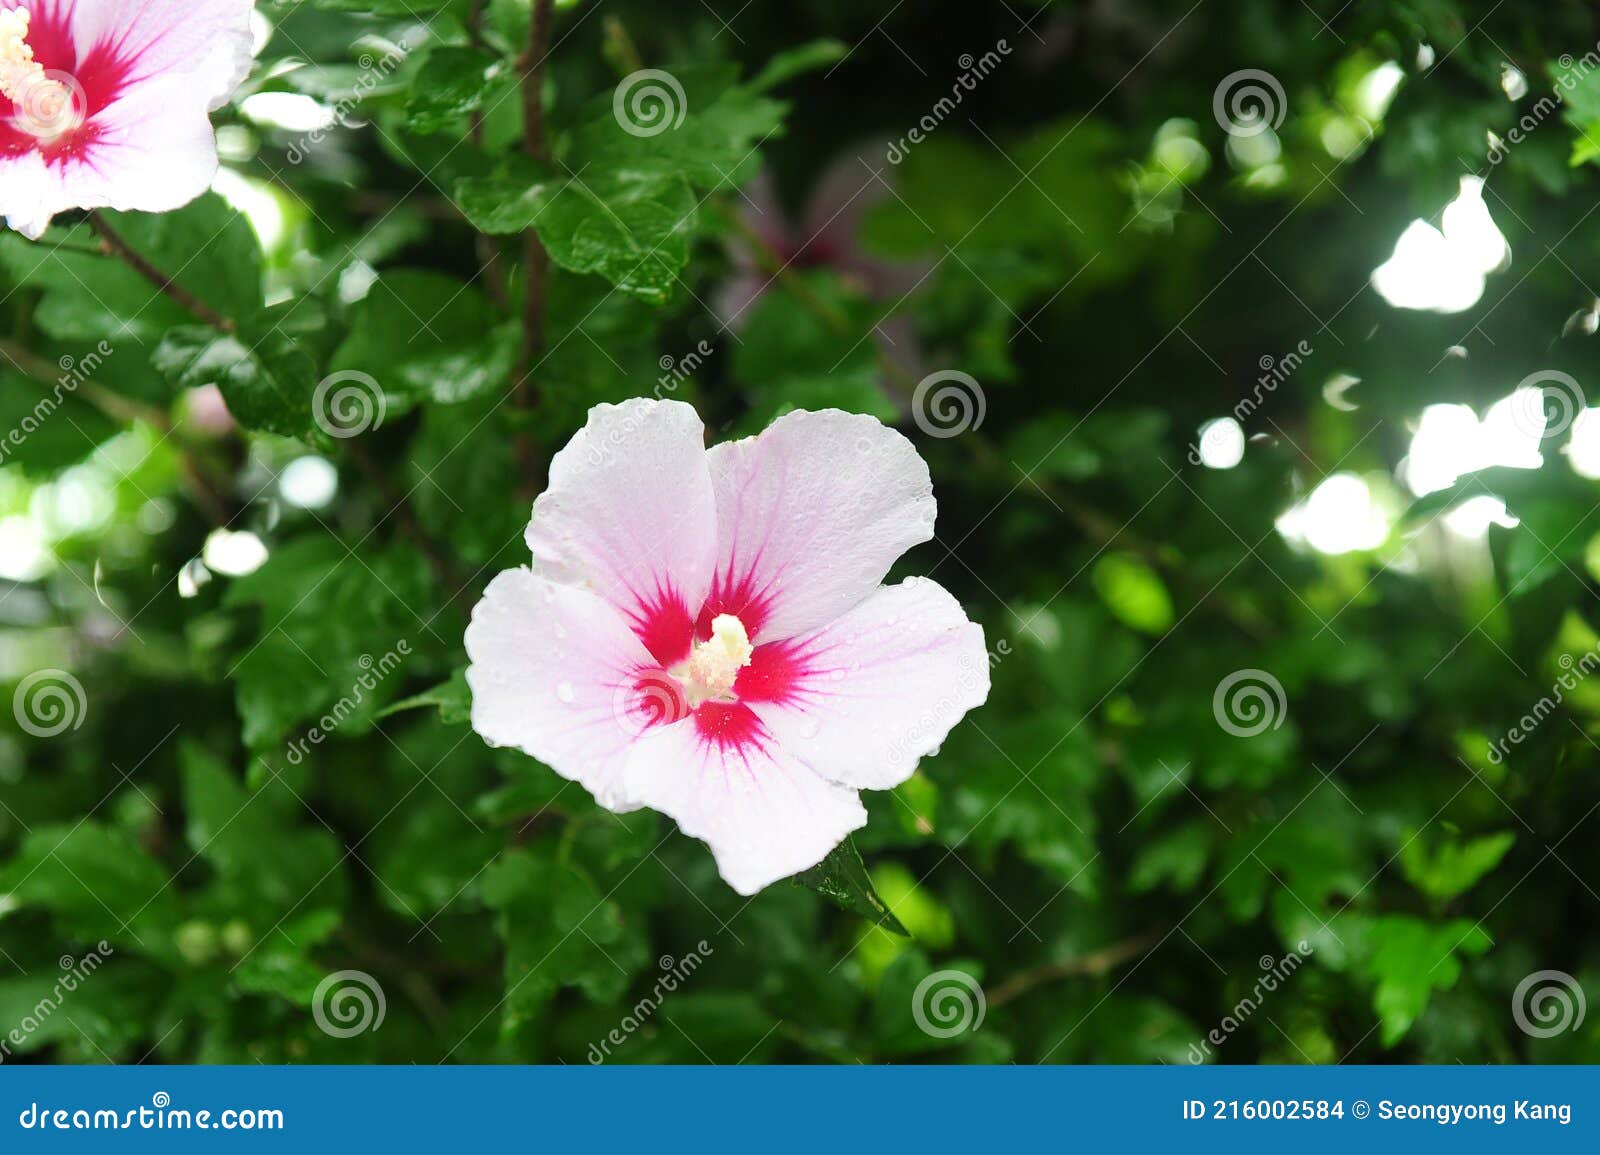 La Rosa De Sharon Es Considerada Como La Flor Nacional De Corea. Foto de  archivo - Imagen de prado, wildflower: 216002584